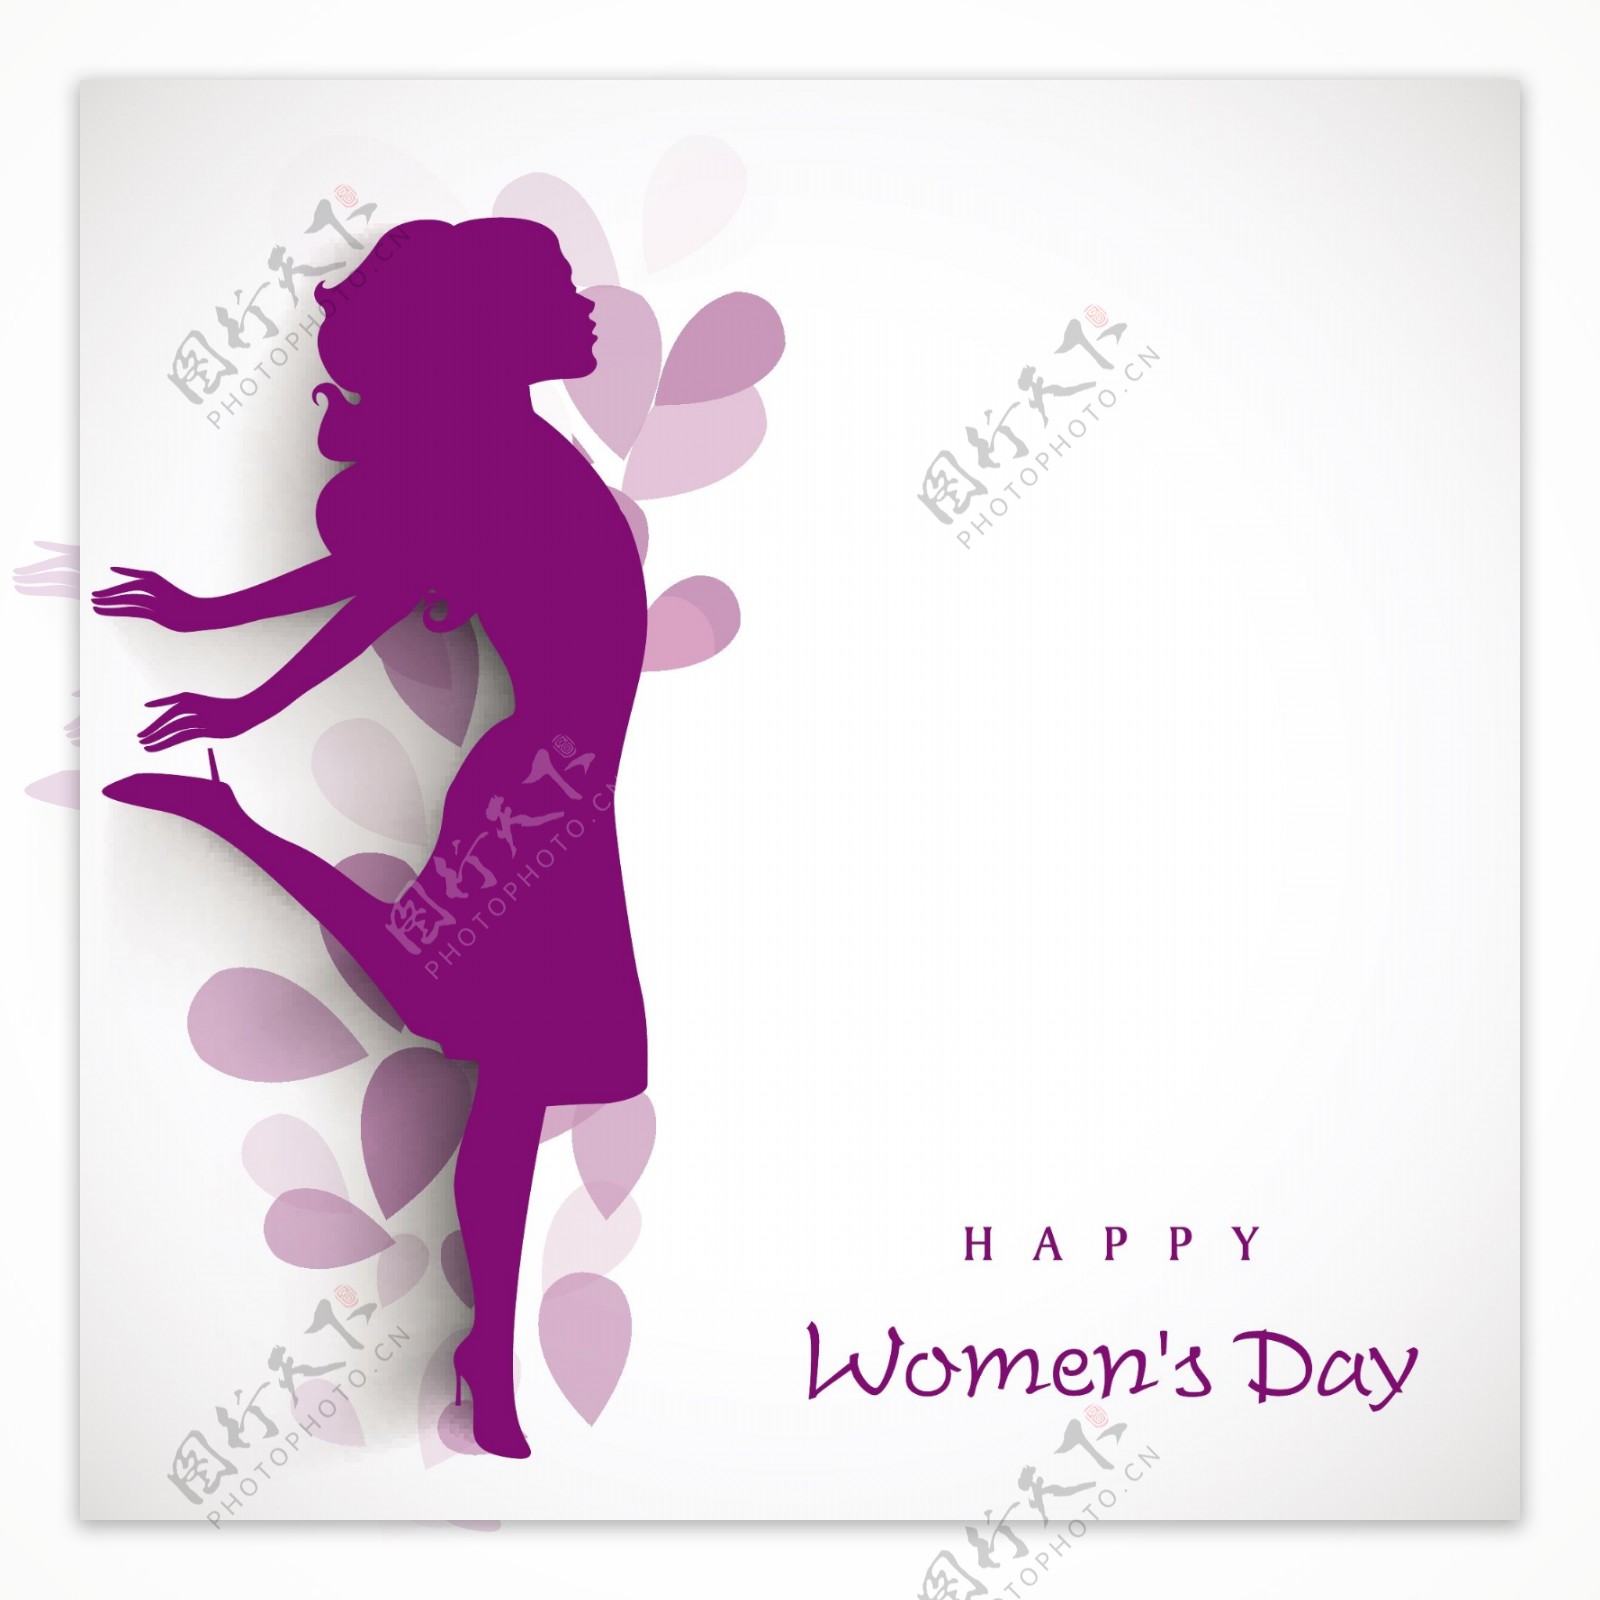 三八妇女节贺卡或海报以花装饰的灰色背景舞姿女孩紫色轮廓设计